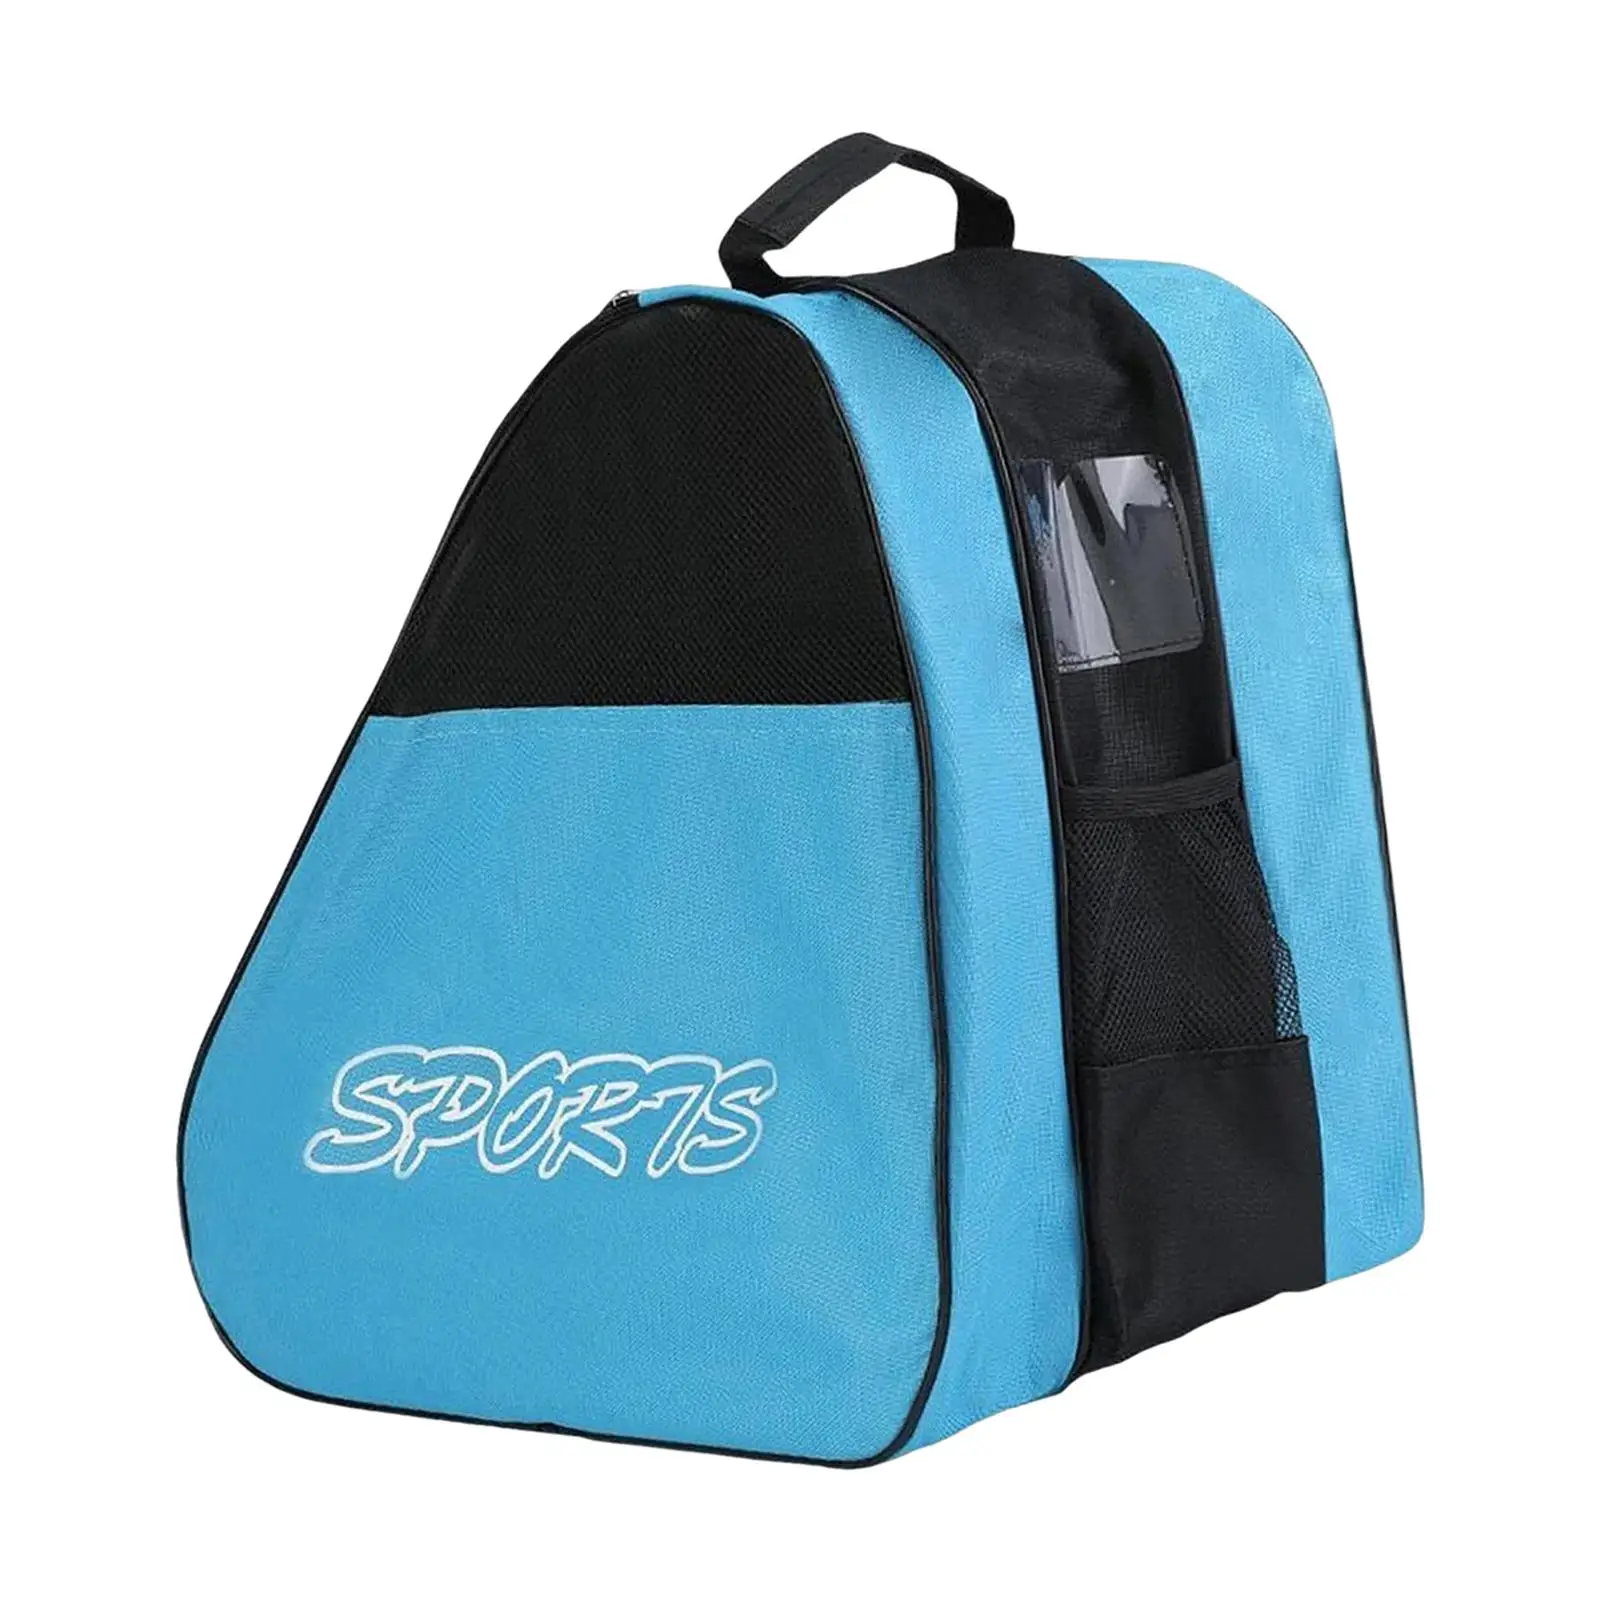 Roller Skates Bag Adjustable Shoulder Strap Adults Kids Skating Handbag